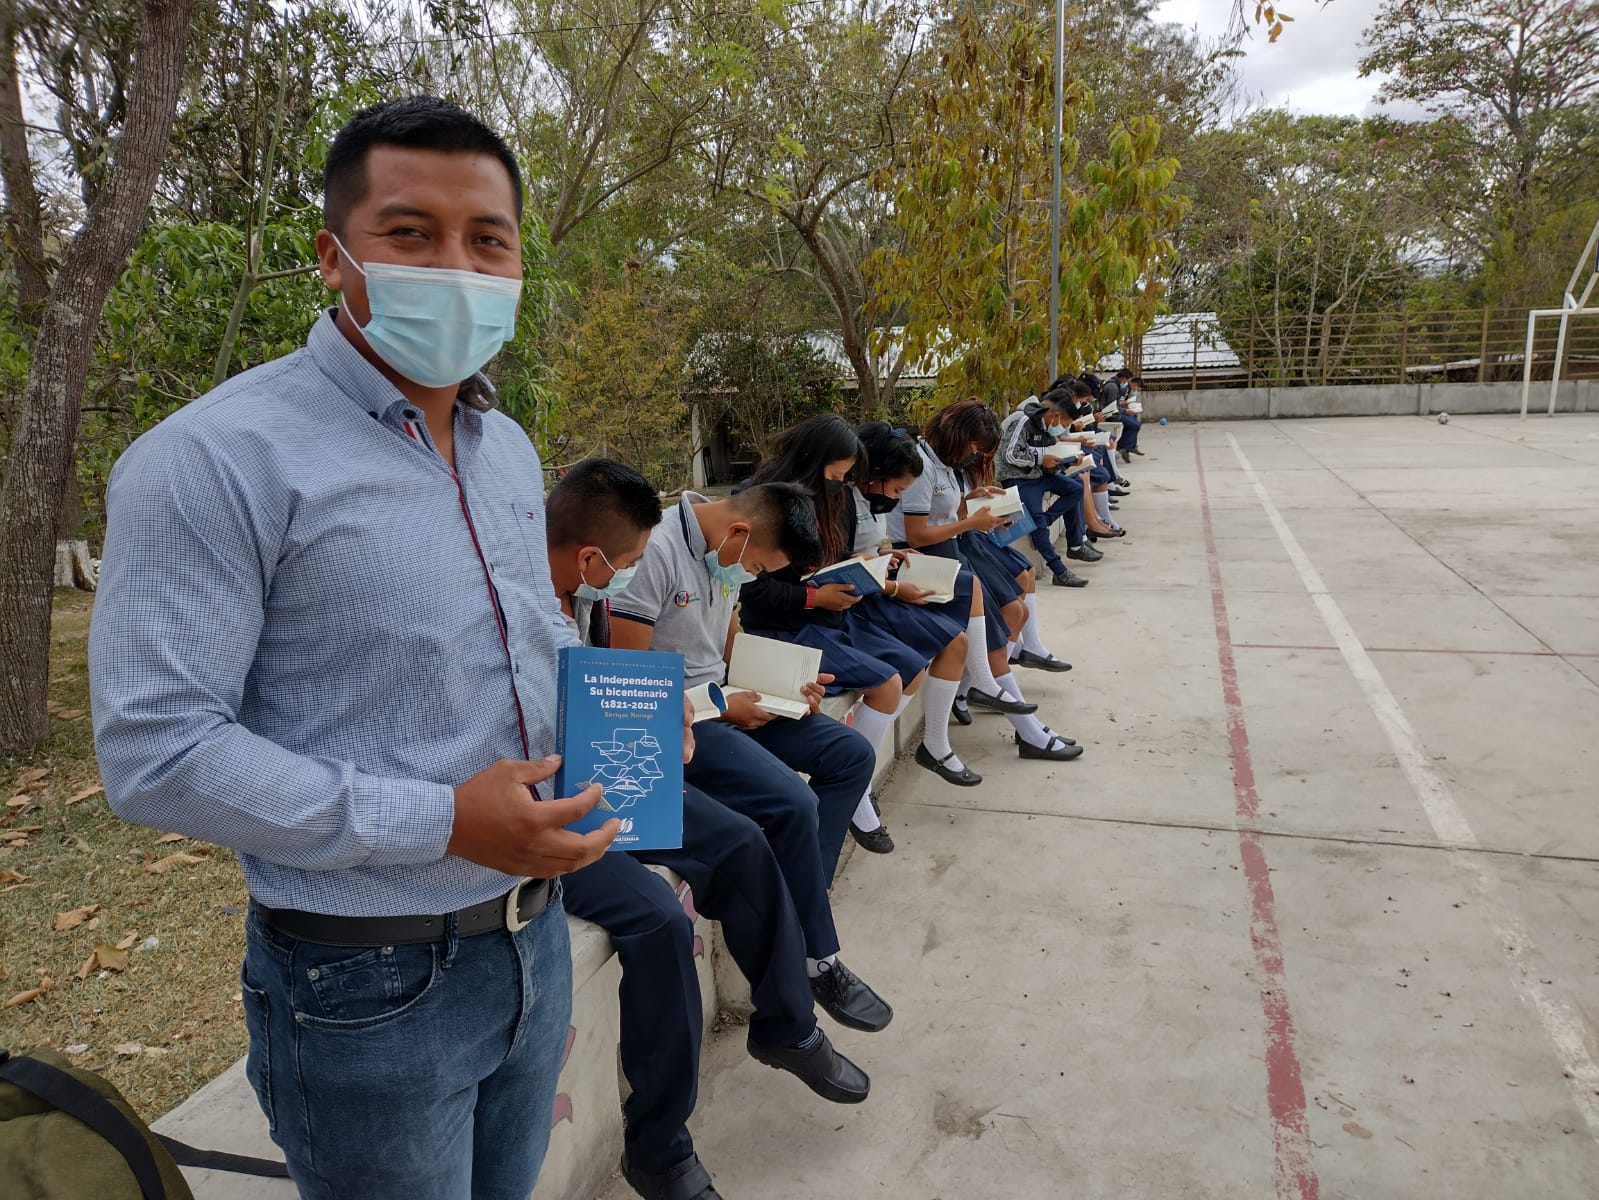 Taller de lectura con obras de autores Guatemaltecos